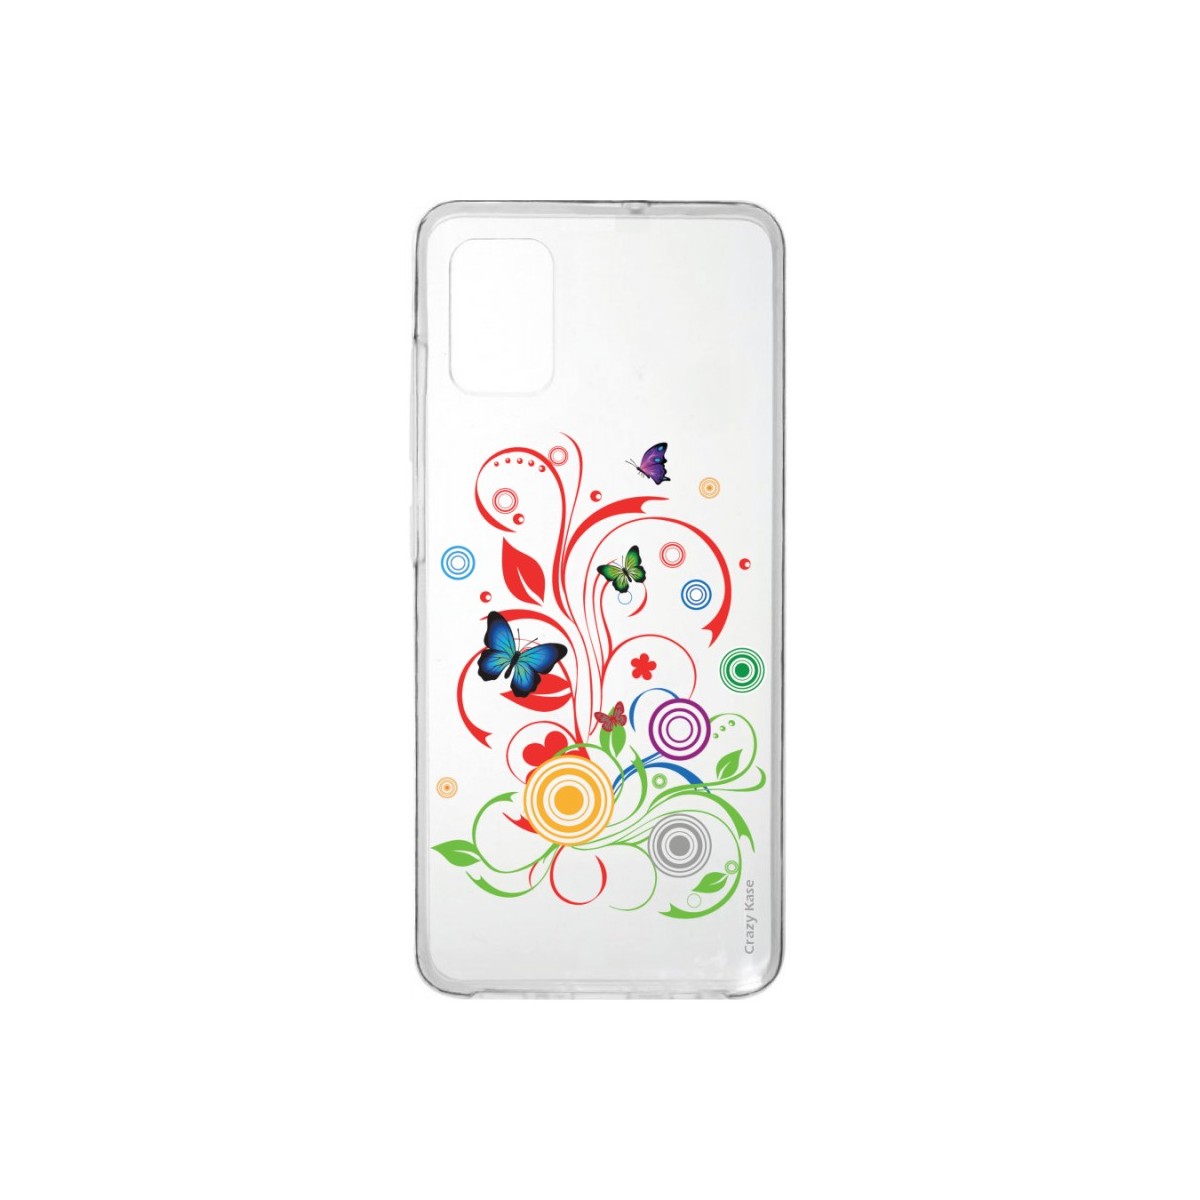 Coque Samsung Galaxy A41 souple Papillons et Cercles Crazy Kase